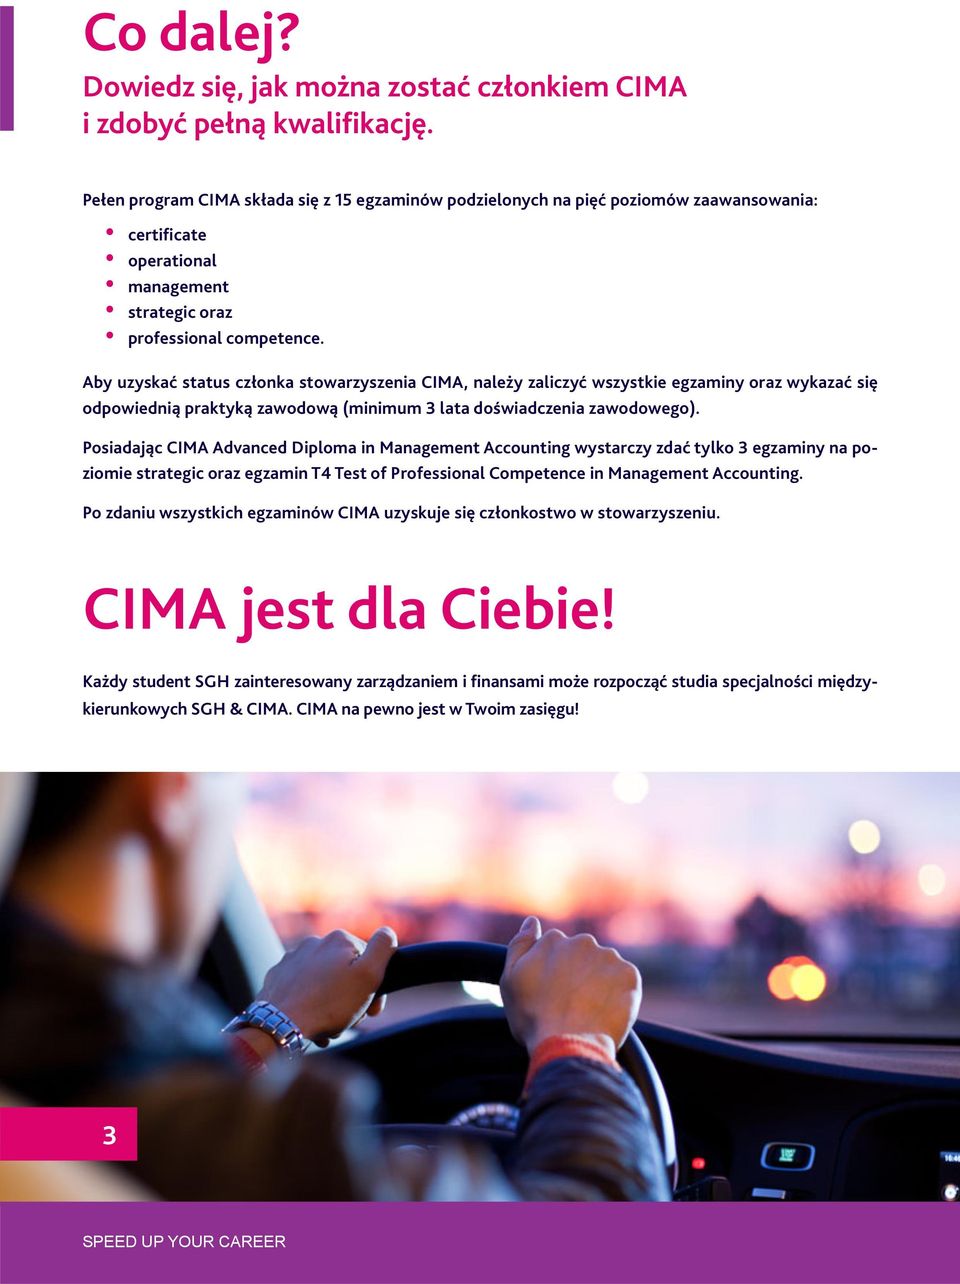 Aby uzyskać status członka stowarzyszenia CIMA, należy zaliczyć wszystkie egzaminy oraz wykazać się odpowiednią praktyką zawodową (minimum lata doświadczenia zawodowego).